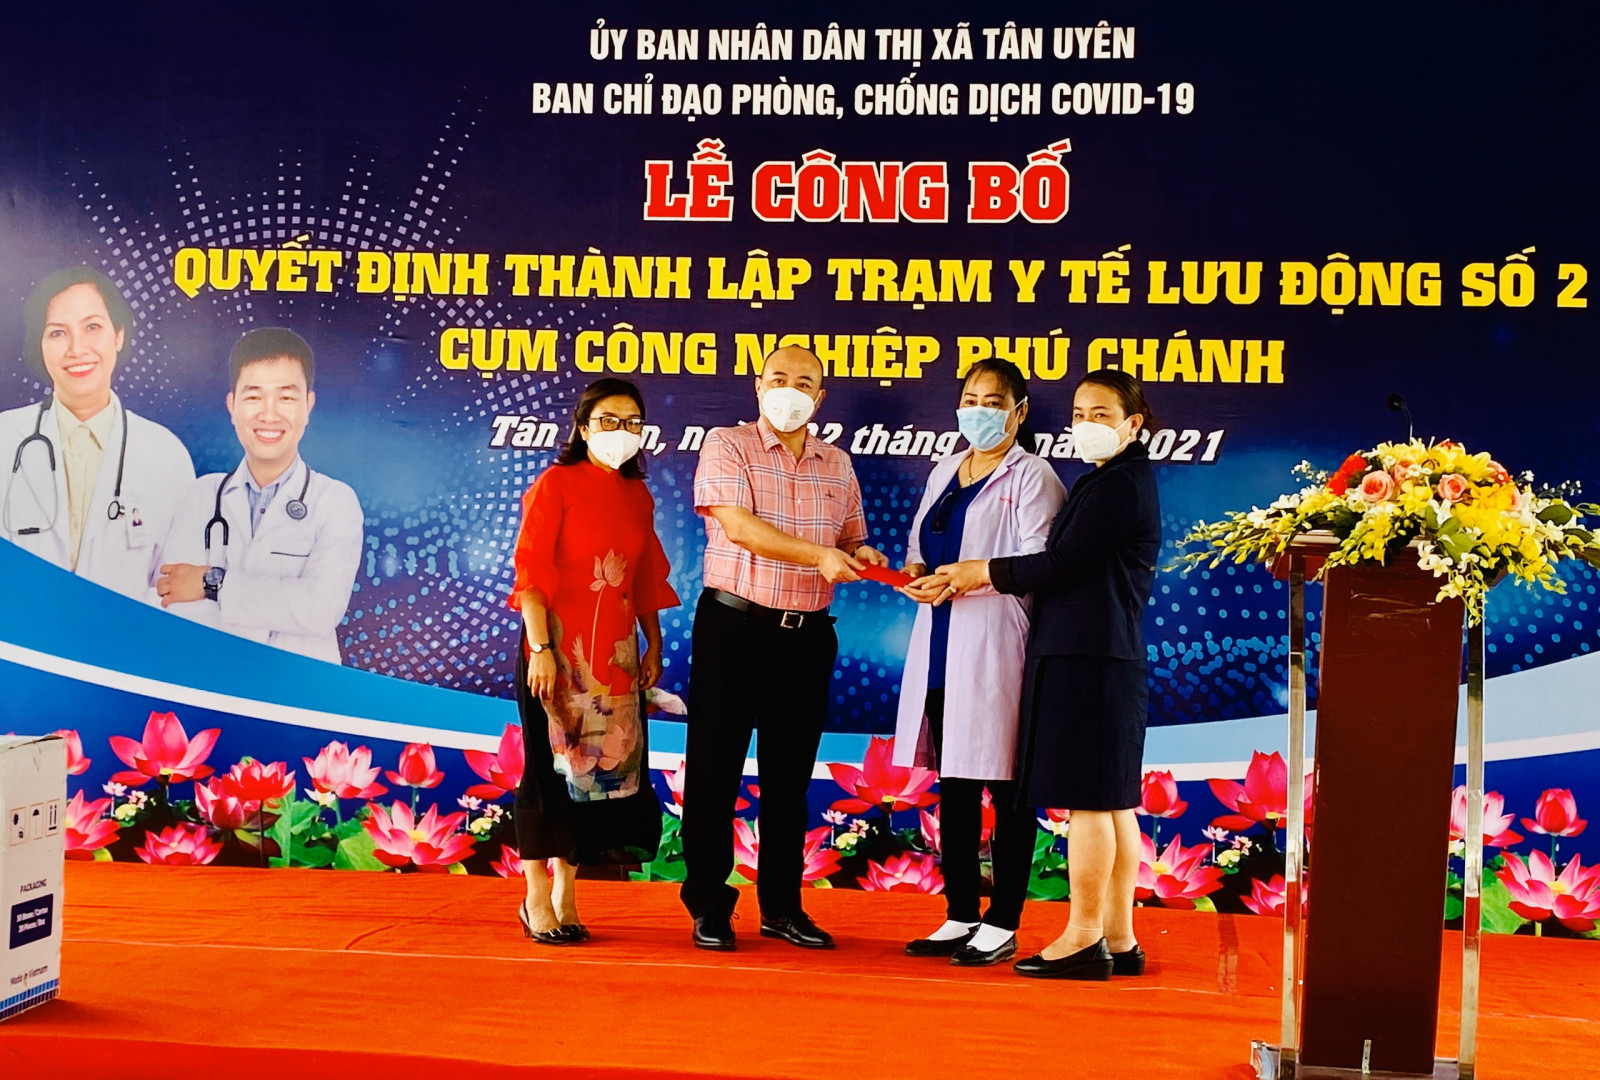 Ông Zheng Xia, Phó Tổng Giám đốc Công ty TNHH Thiên Phiên  (TX.Tân Uyên) trao quà cho Trạm Y tế lưu động Cụm công nghiệp  Phú Chánh trong ngày thành lập 